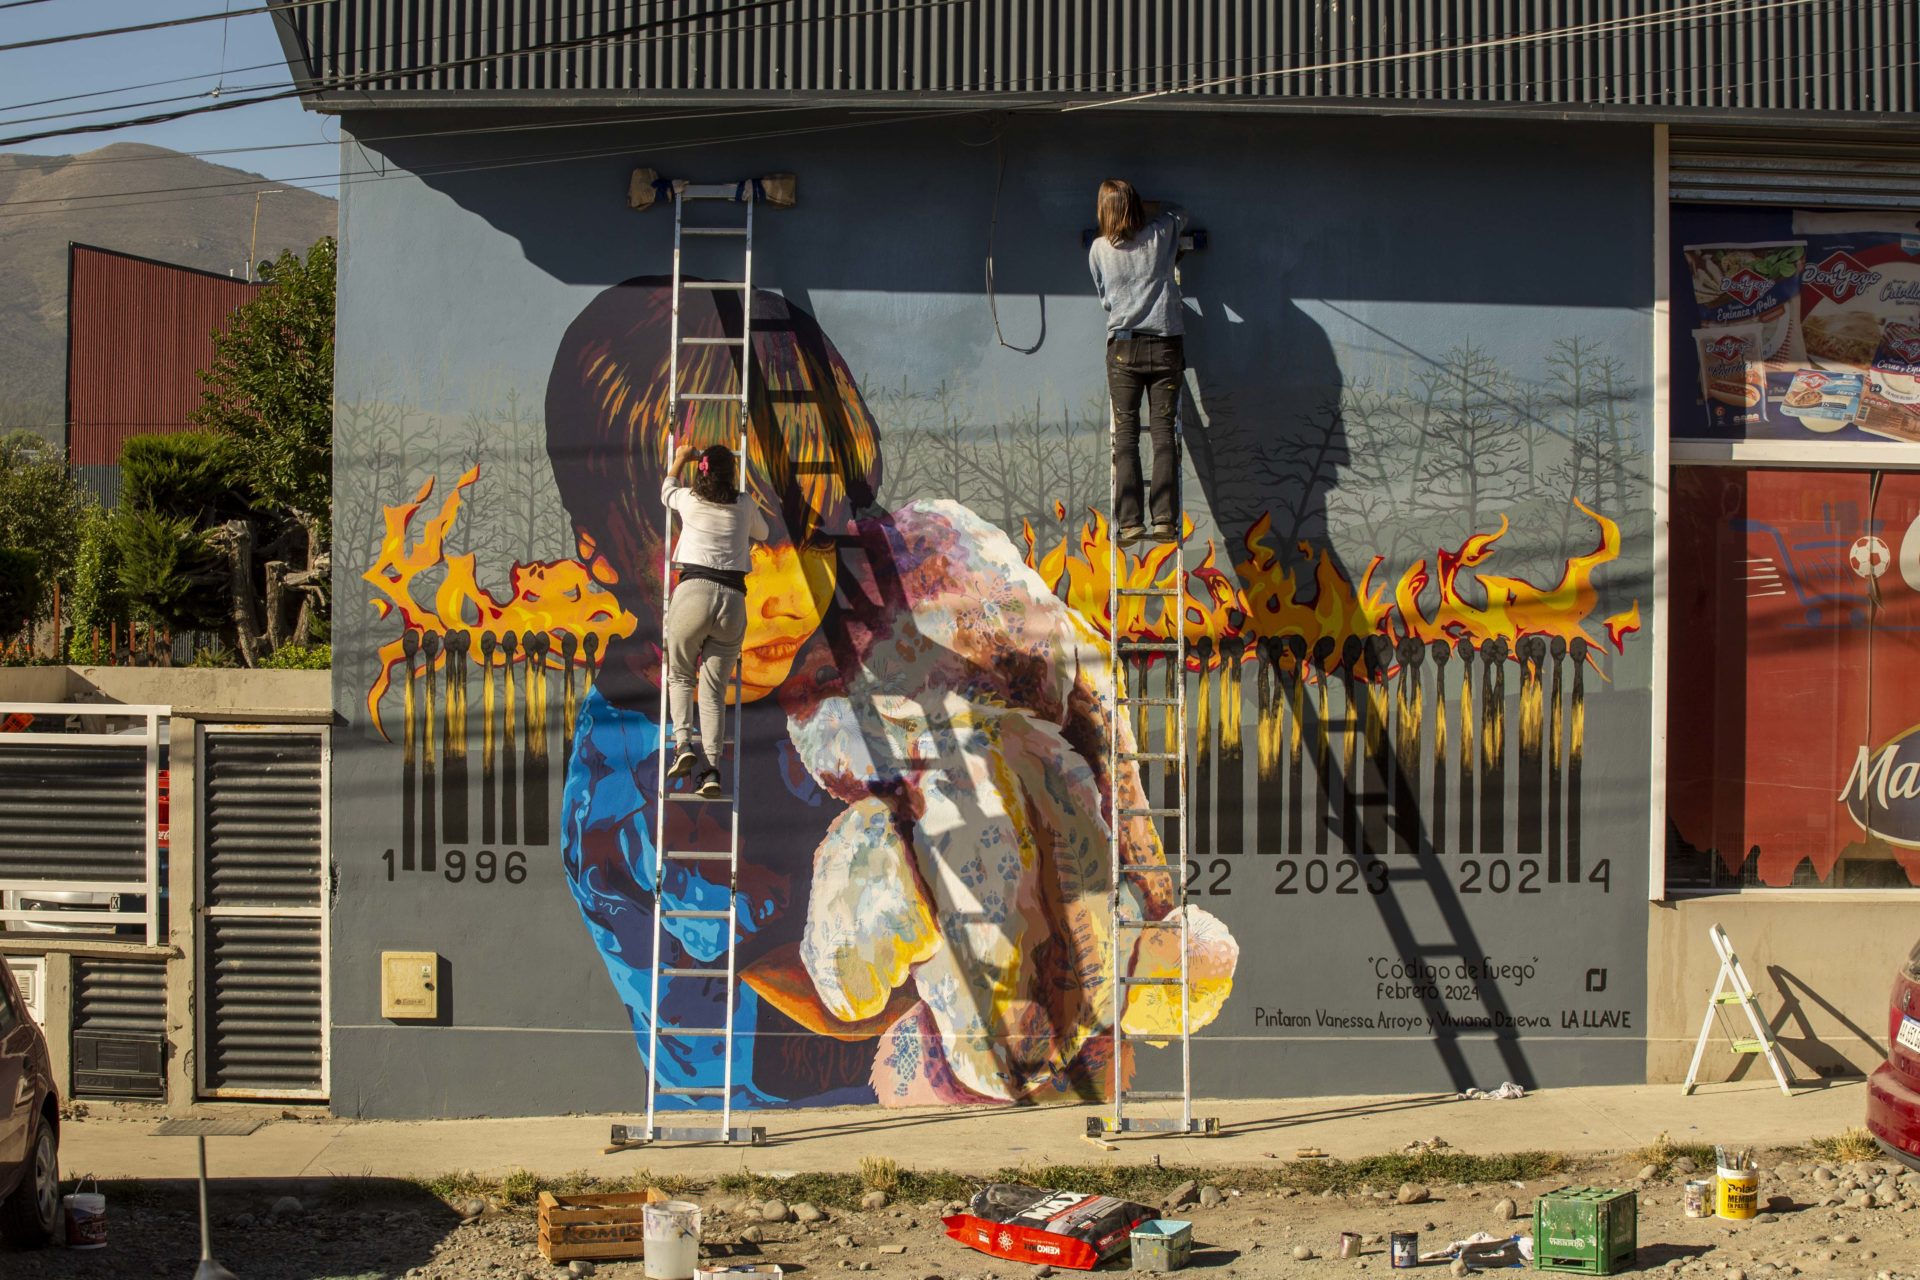 "Código de fuego", el mural en Bariloche que llama a la reflexión sobre incendios y capitalismo